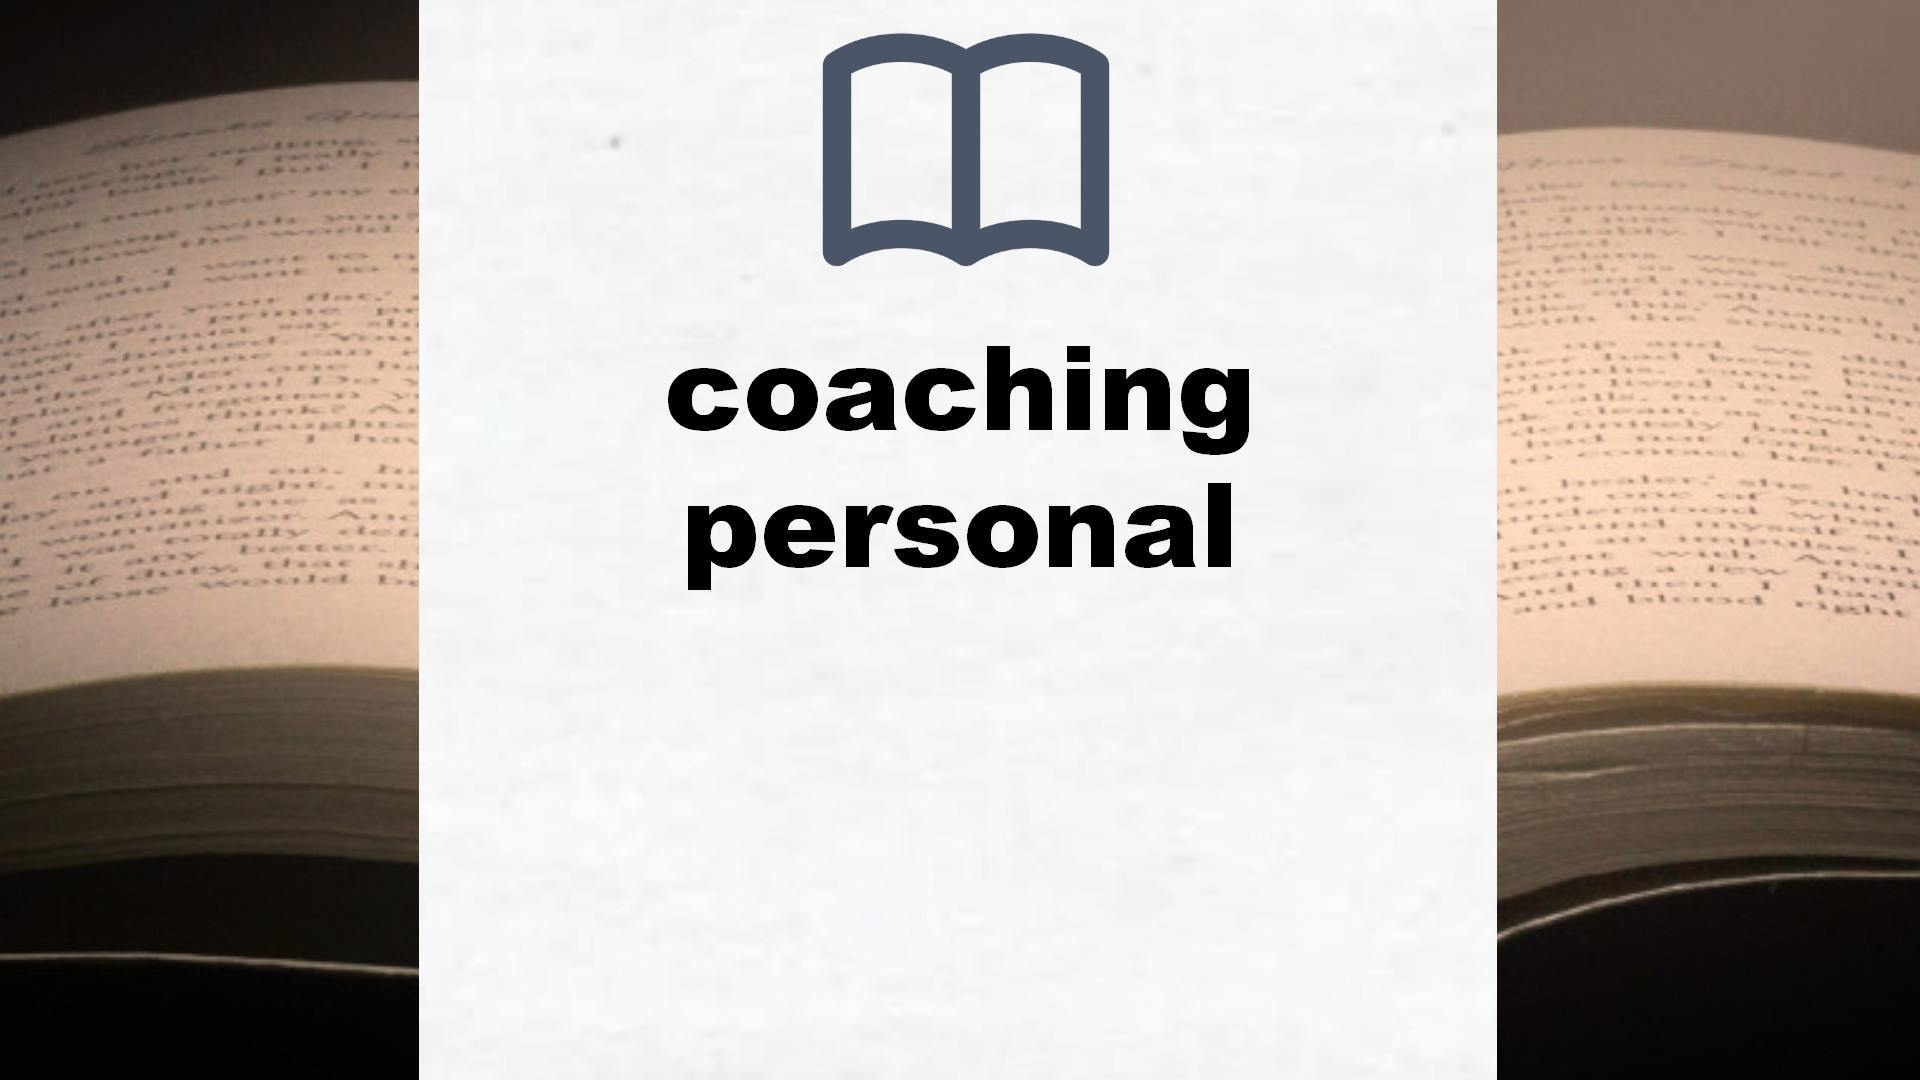 Libros sobre coaching personal